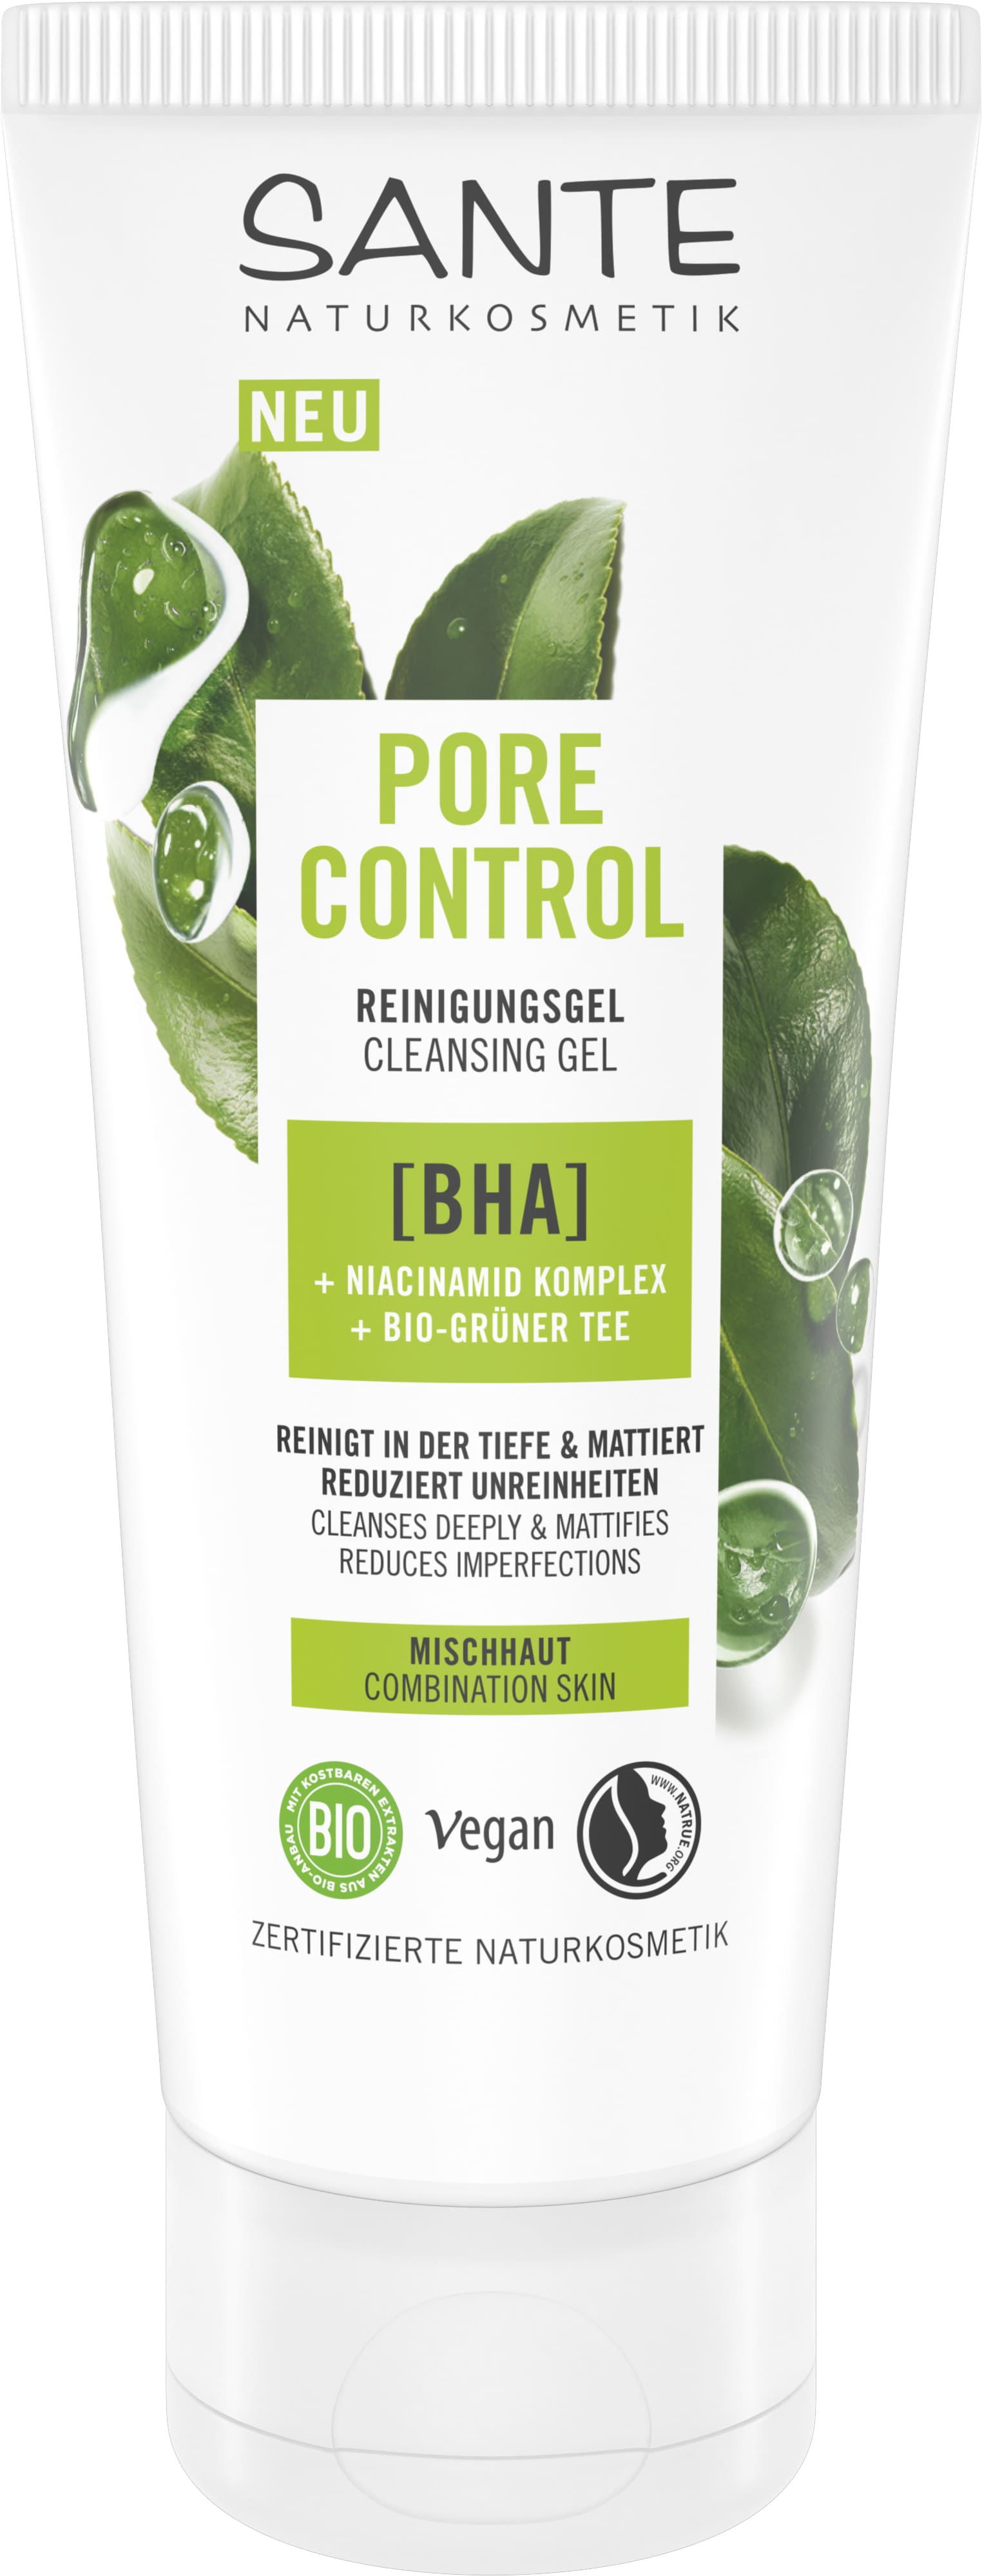 Pore Control Reinigungsgel mit BHA, Niacinamid Komplex & Bio-Grüner Tee |  SANTE Naturkosmetik